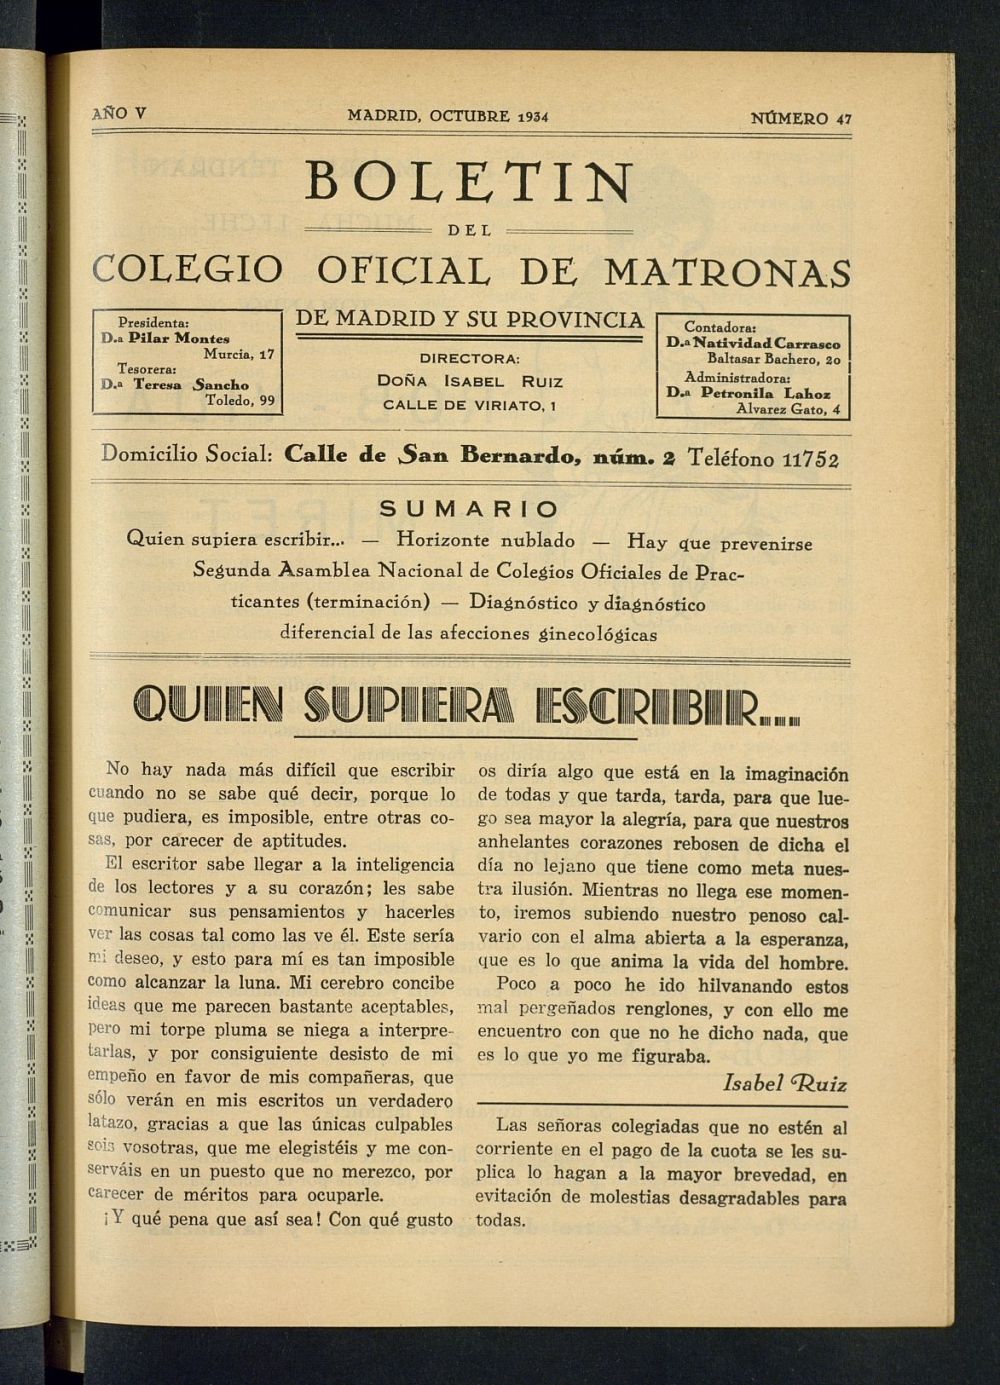 Boletn del Colegio Oficial de Matronas de Madrid y su Provincia de octubre de 1934